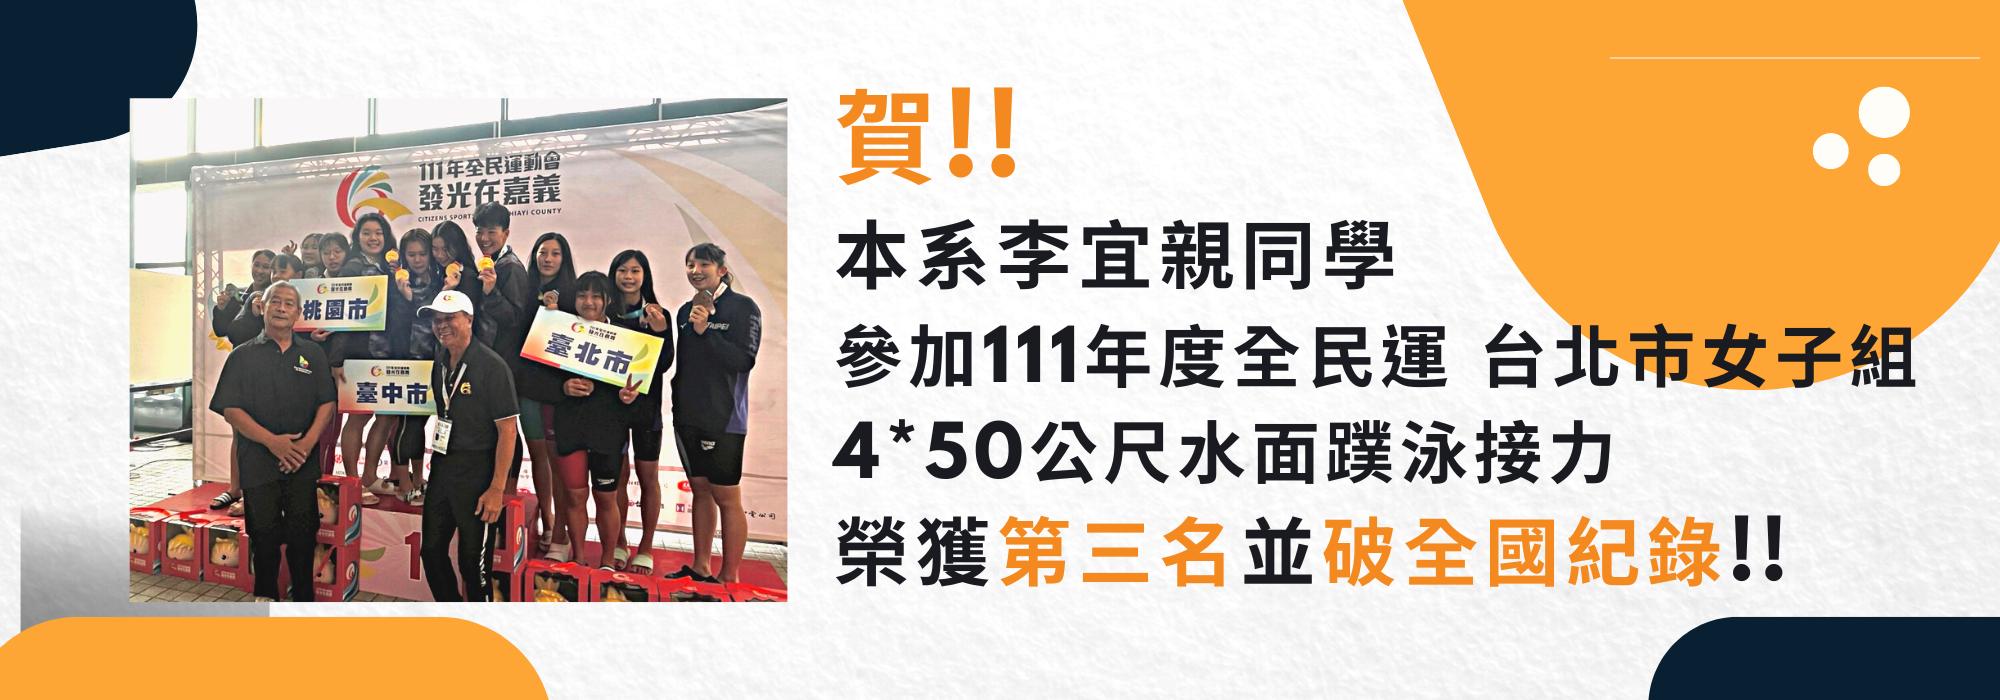 賀李宜親獲111年全民運台北市女子組4x50公尺水面蹼泳接力第三名(破全國紀錄)